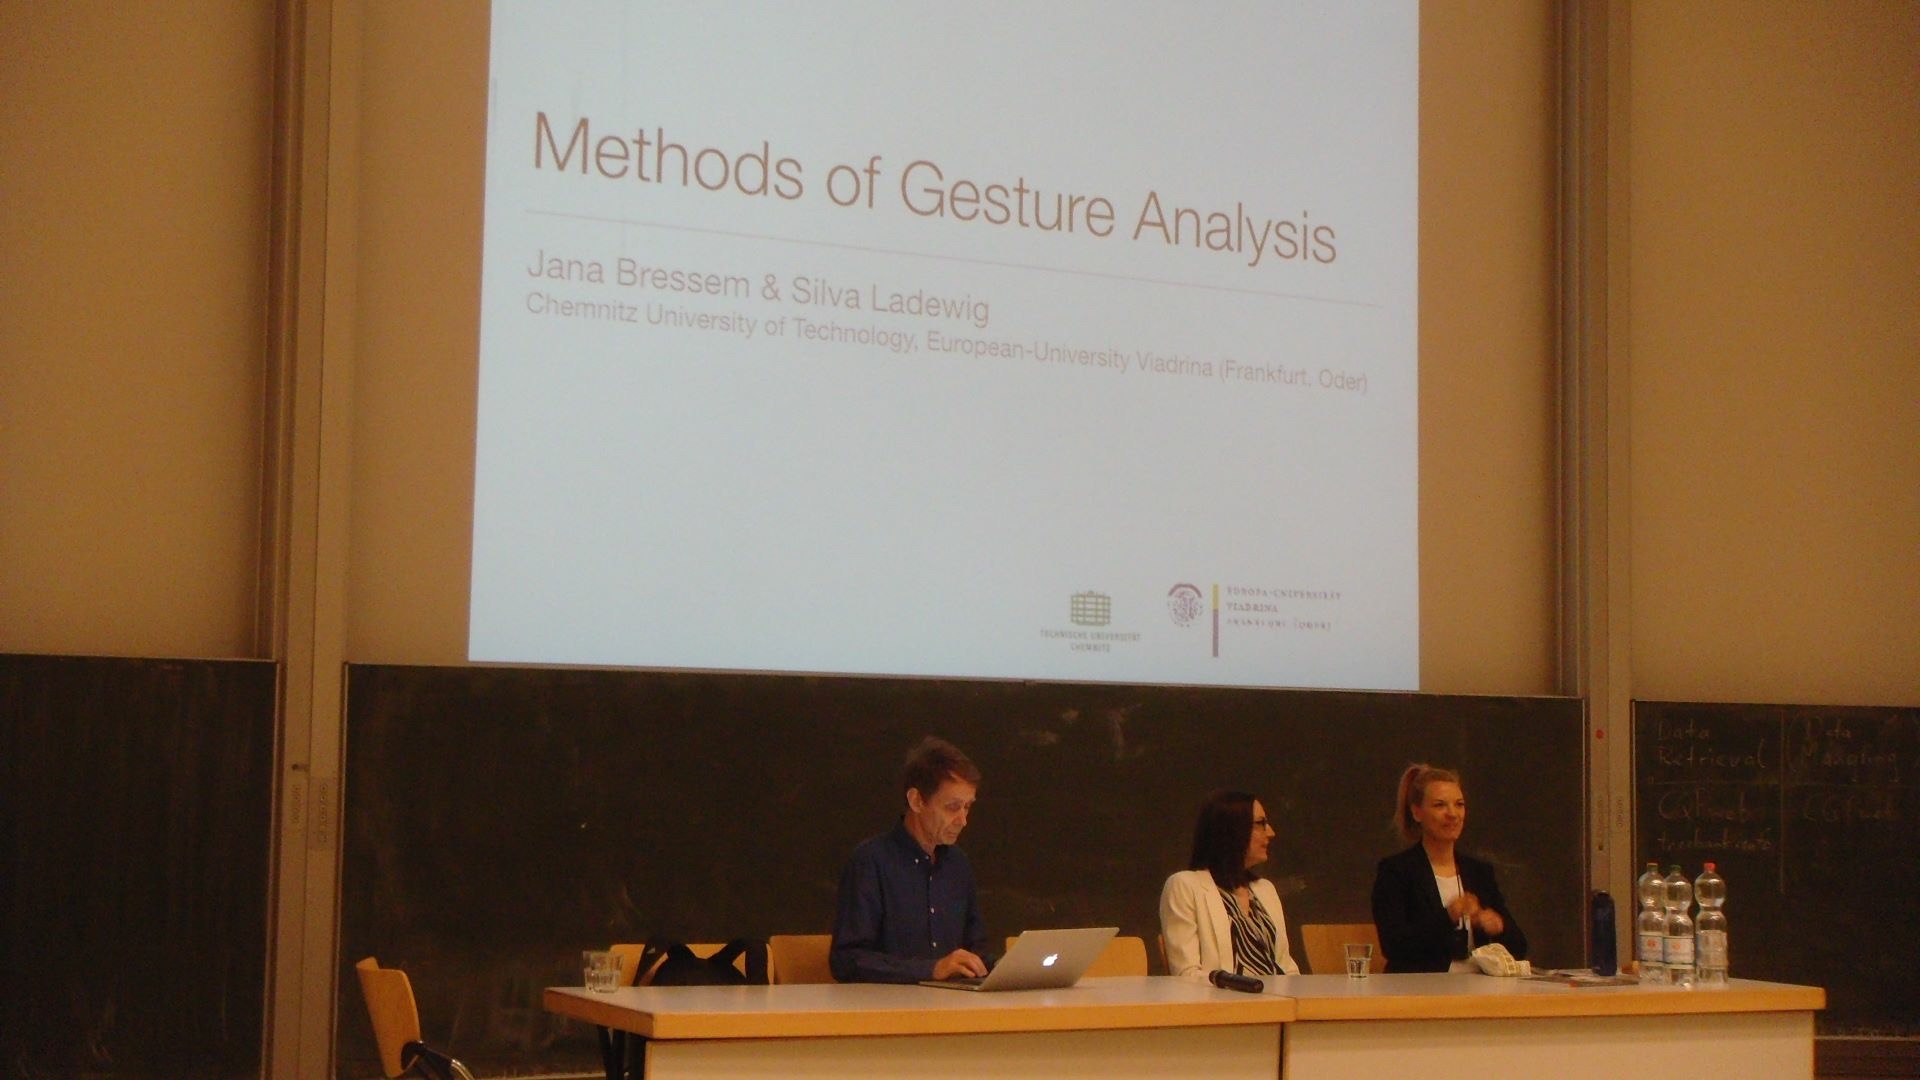 2 Sprecher und 1 Sprecherin sitzen am Podium, im Hintergrund Deckblatt der Präsentation "Methods of Gesture Analysis"